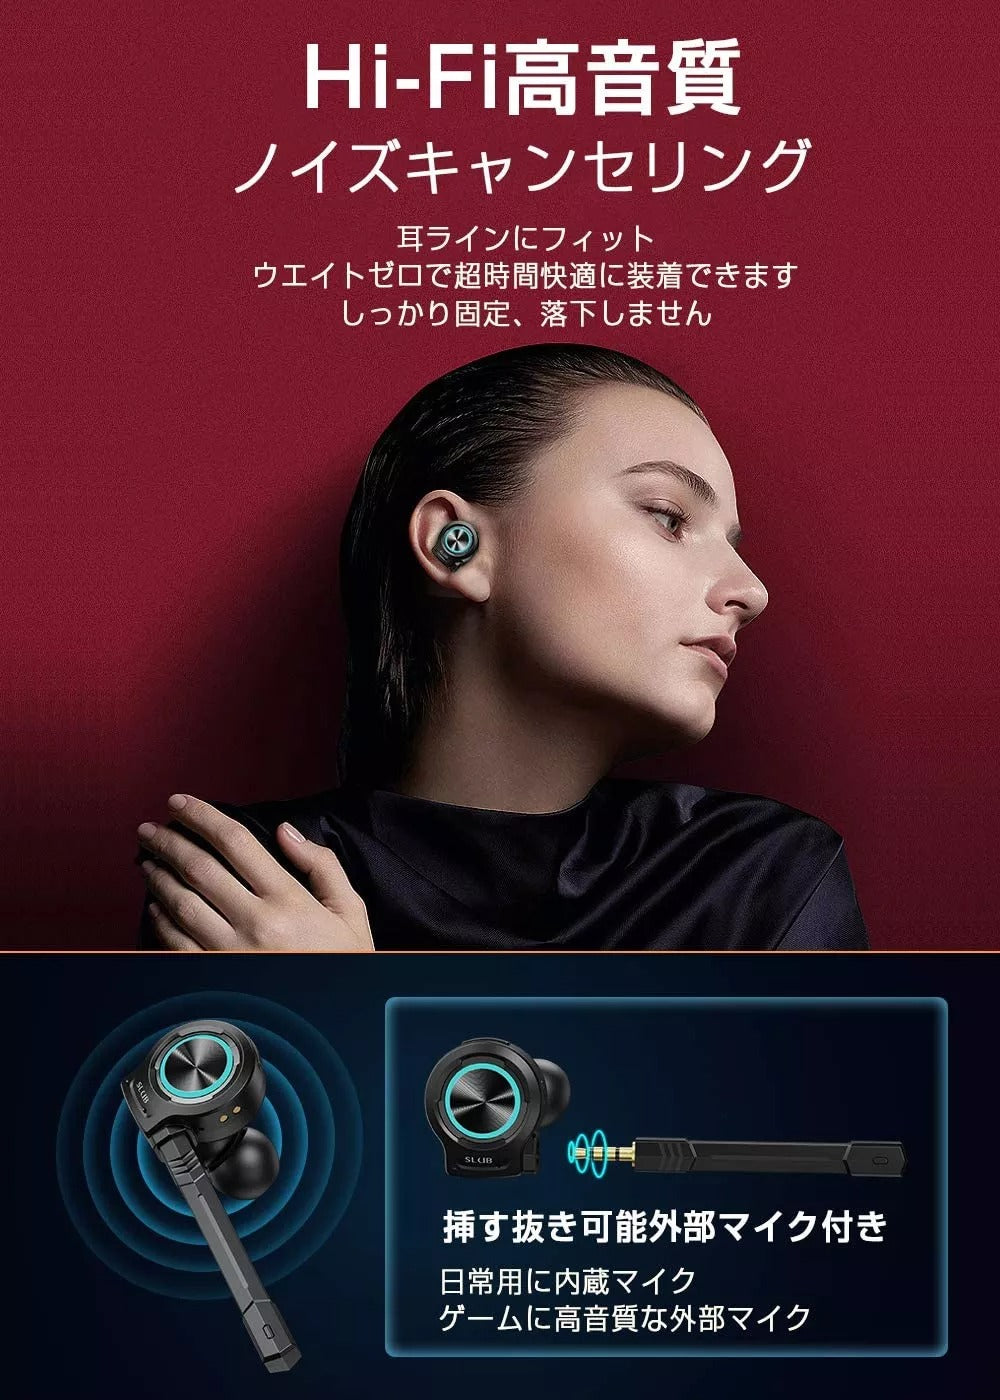 W11-ワイヤレスイヤホン Bluetooth 5.2 イヤホン 遅延ゼロ ゲーミングイヤホン 独立マイク付き 内蔵マイク Hi-Fi高音質